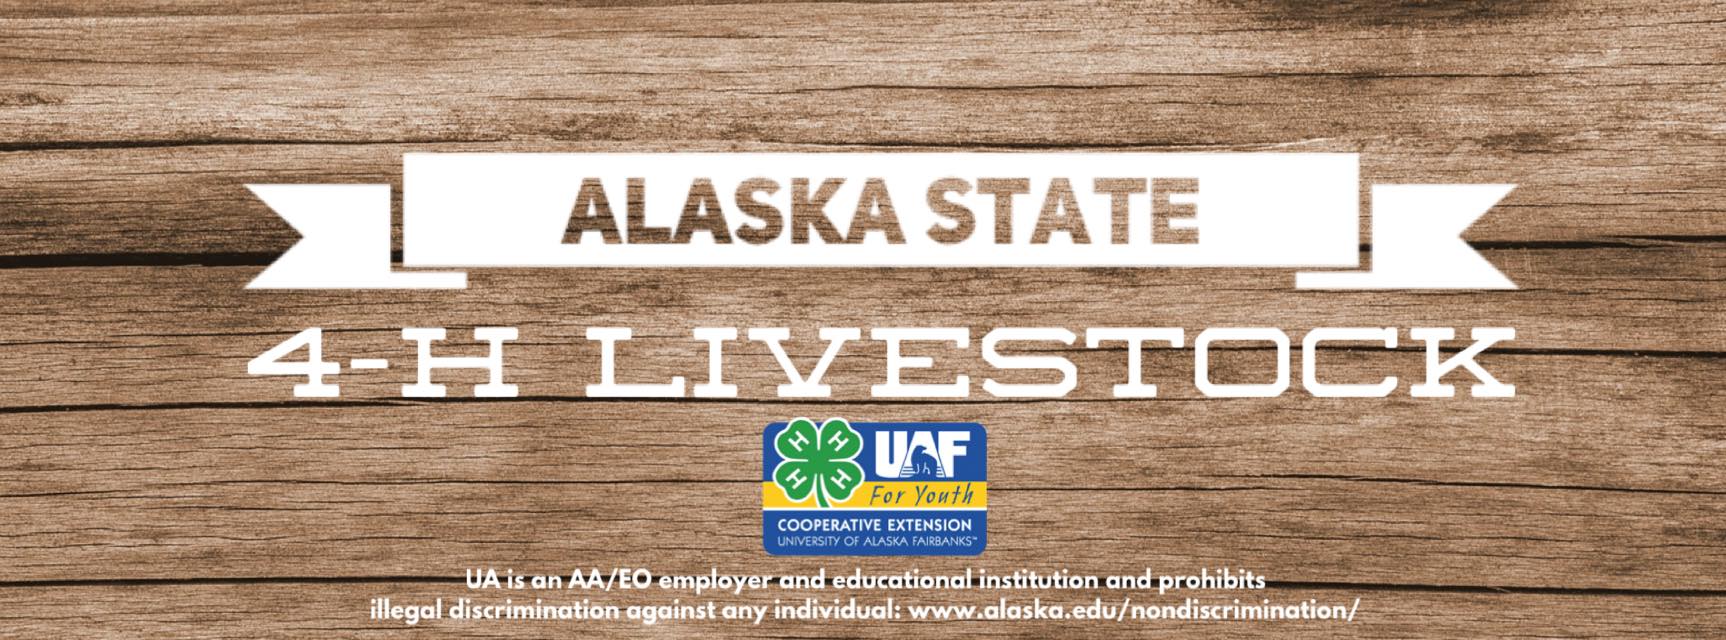 Alaska State 4-H Livestock